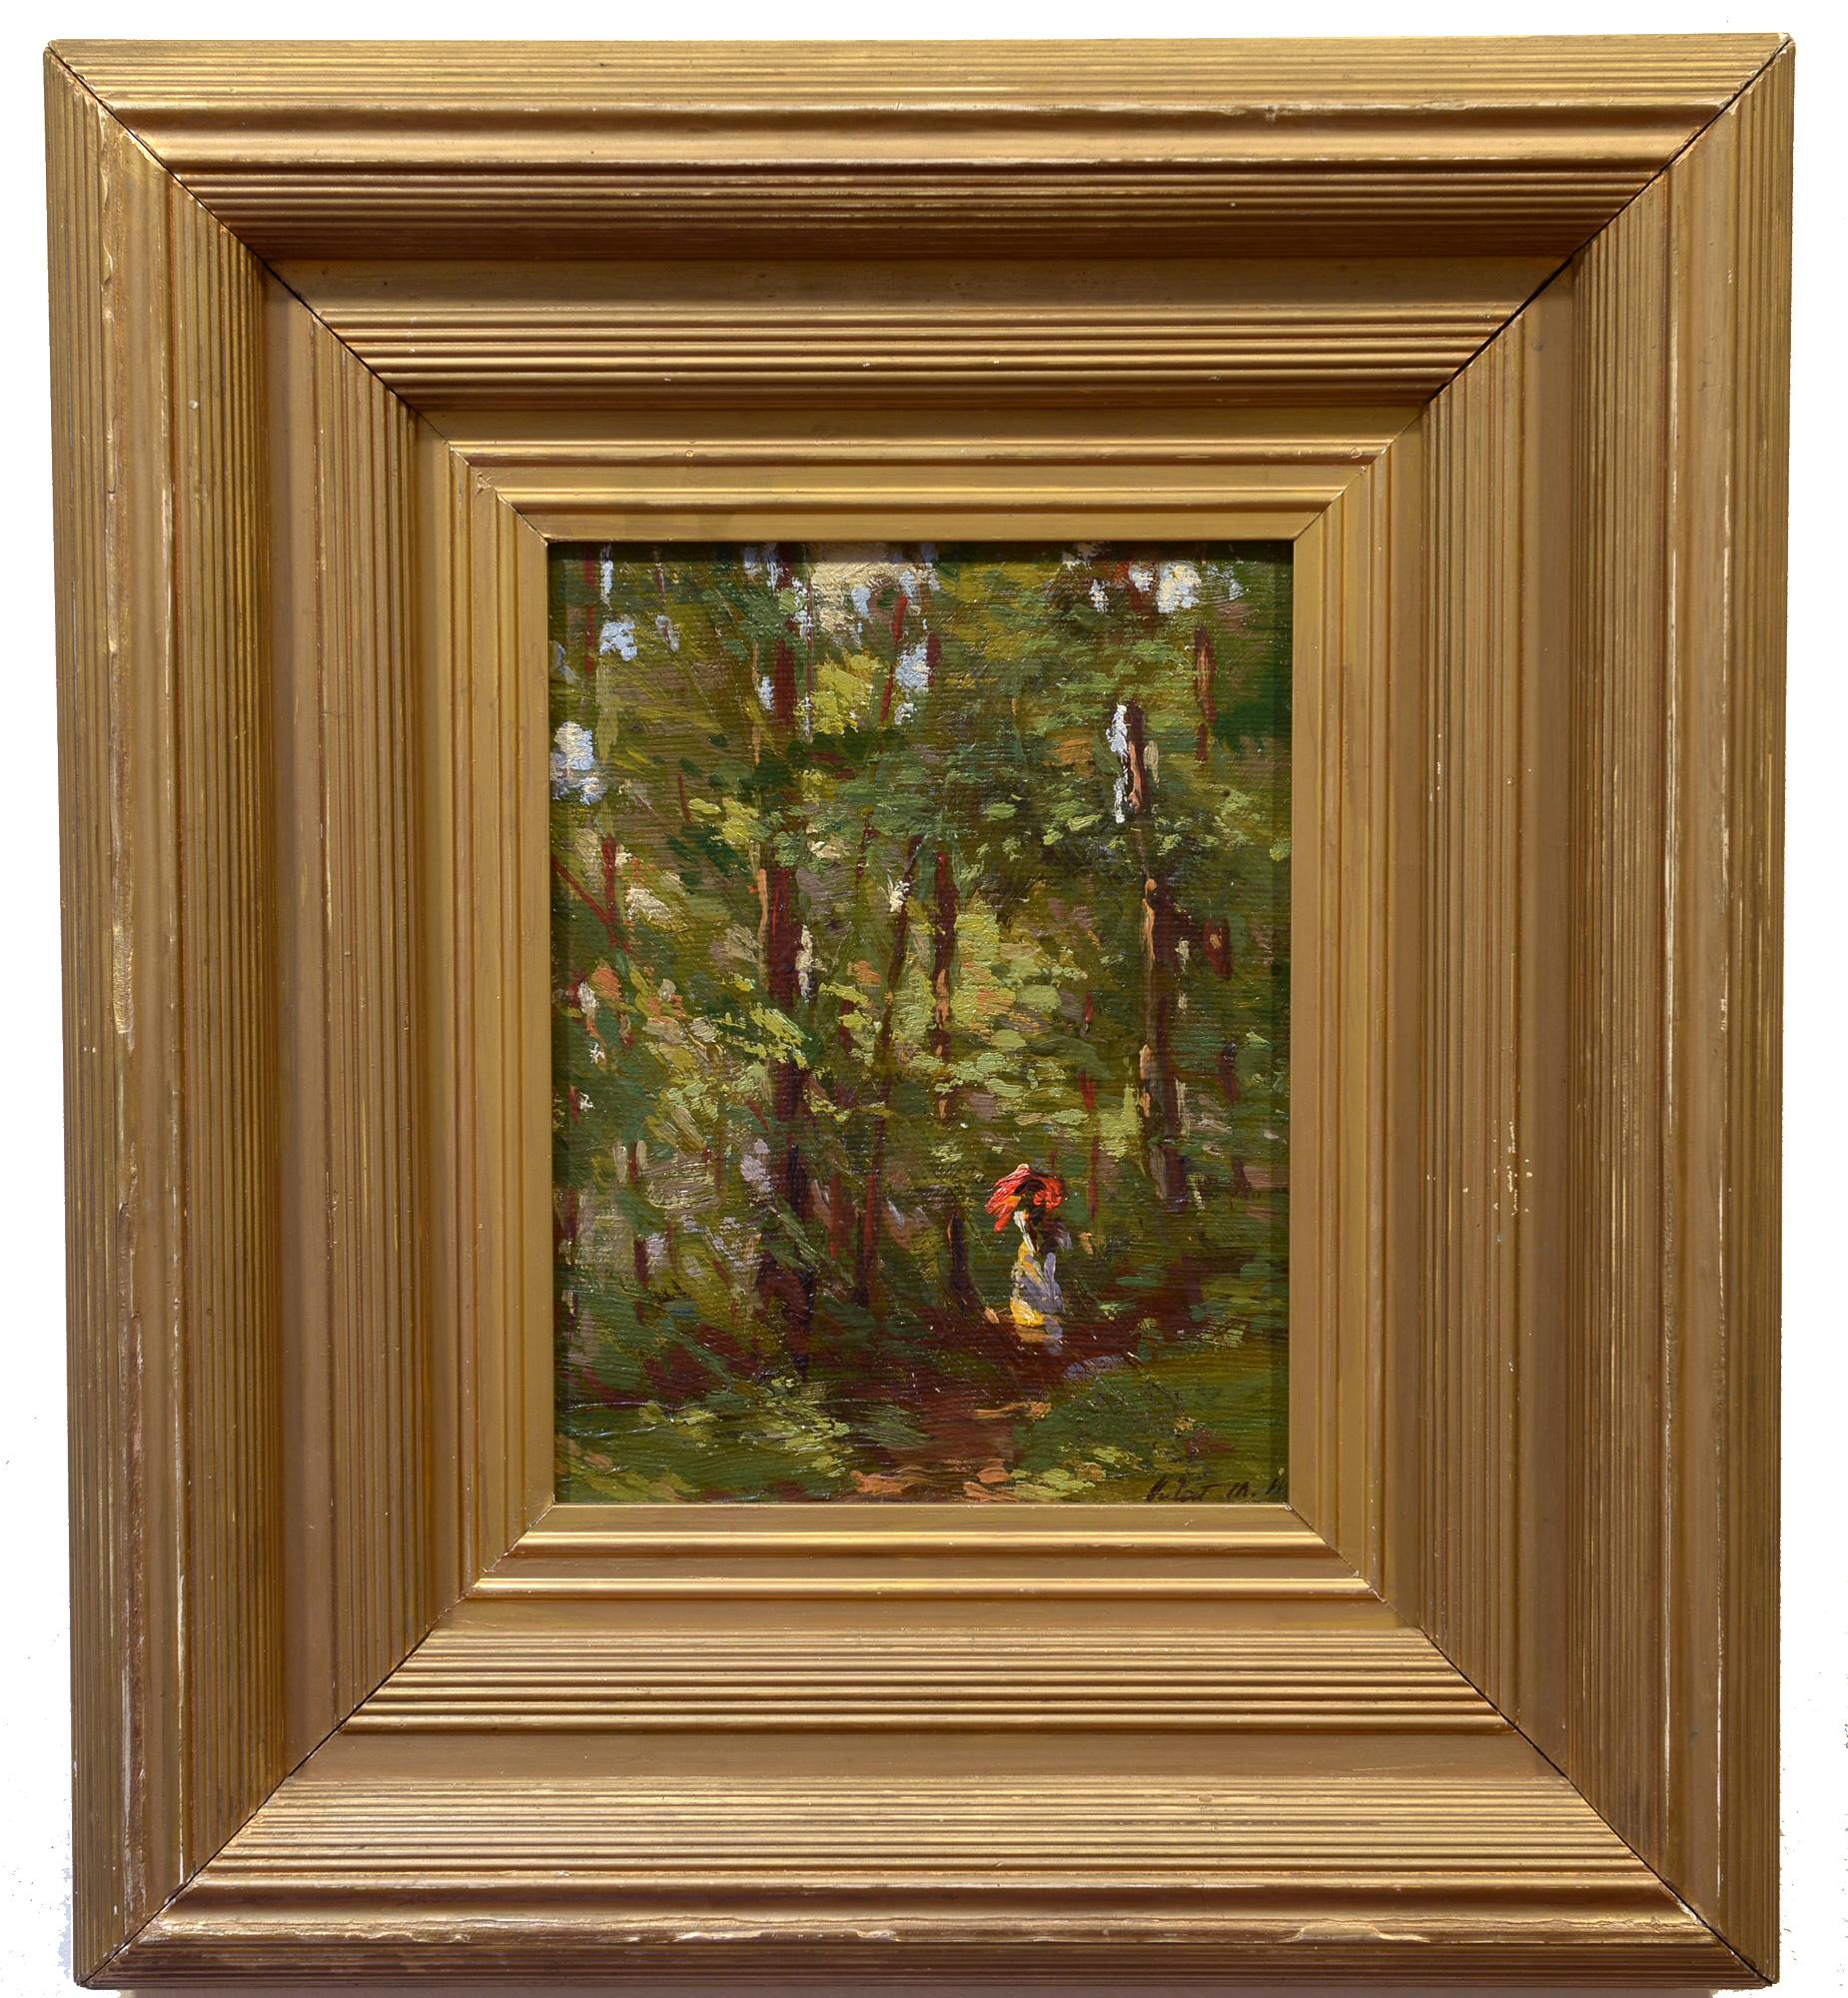 Après-midi impressionniste américain, figure sur un chemin de forêt, paysage - Painting de Juliet M. White